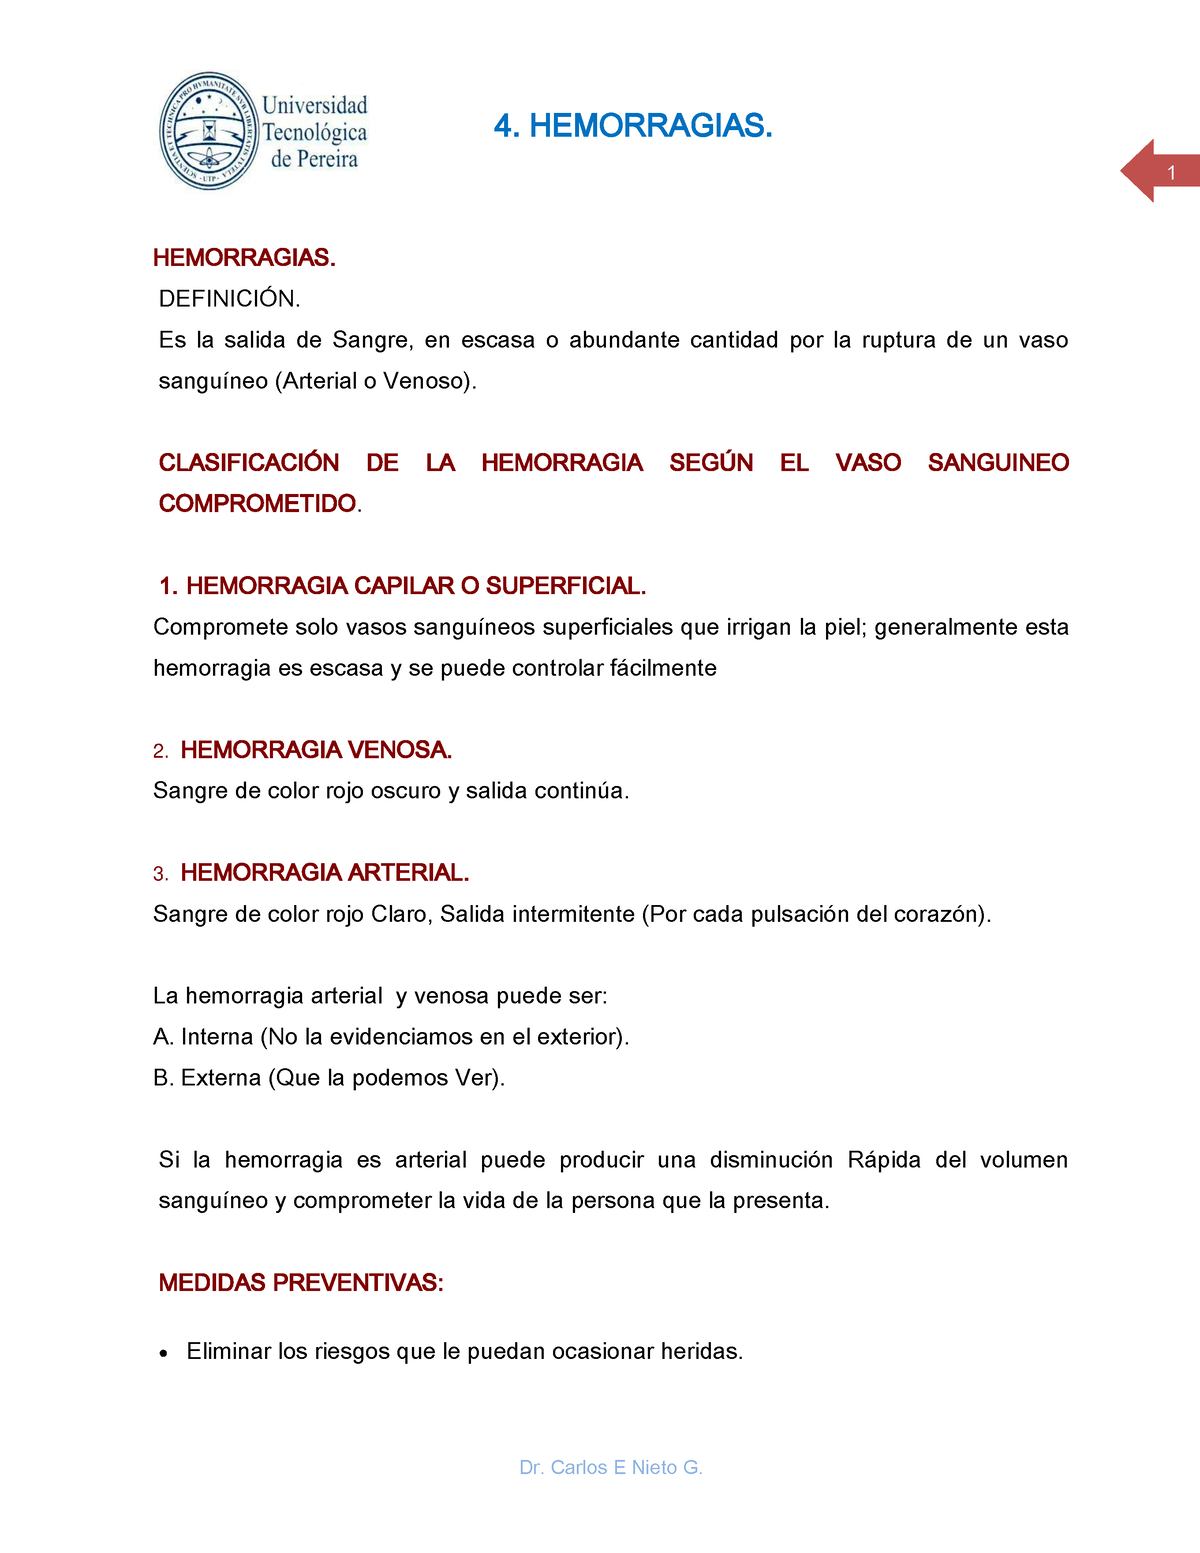 4- Hemorragias - Es un apunte - Dr. Carlos E Nieto G. 1 4. HEMORRAGIAS ...